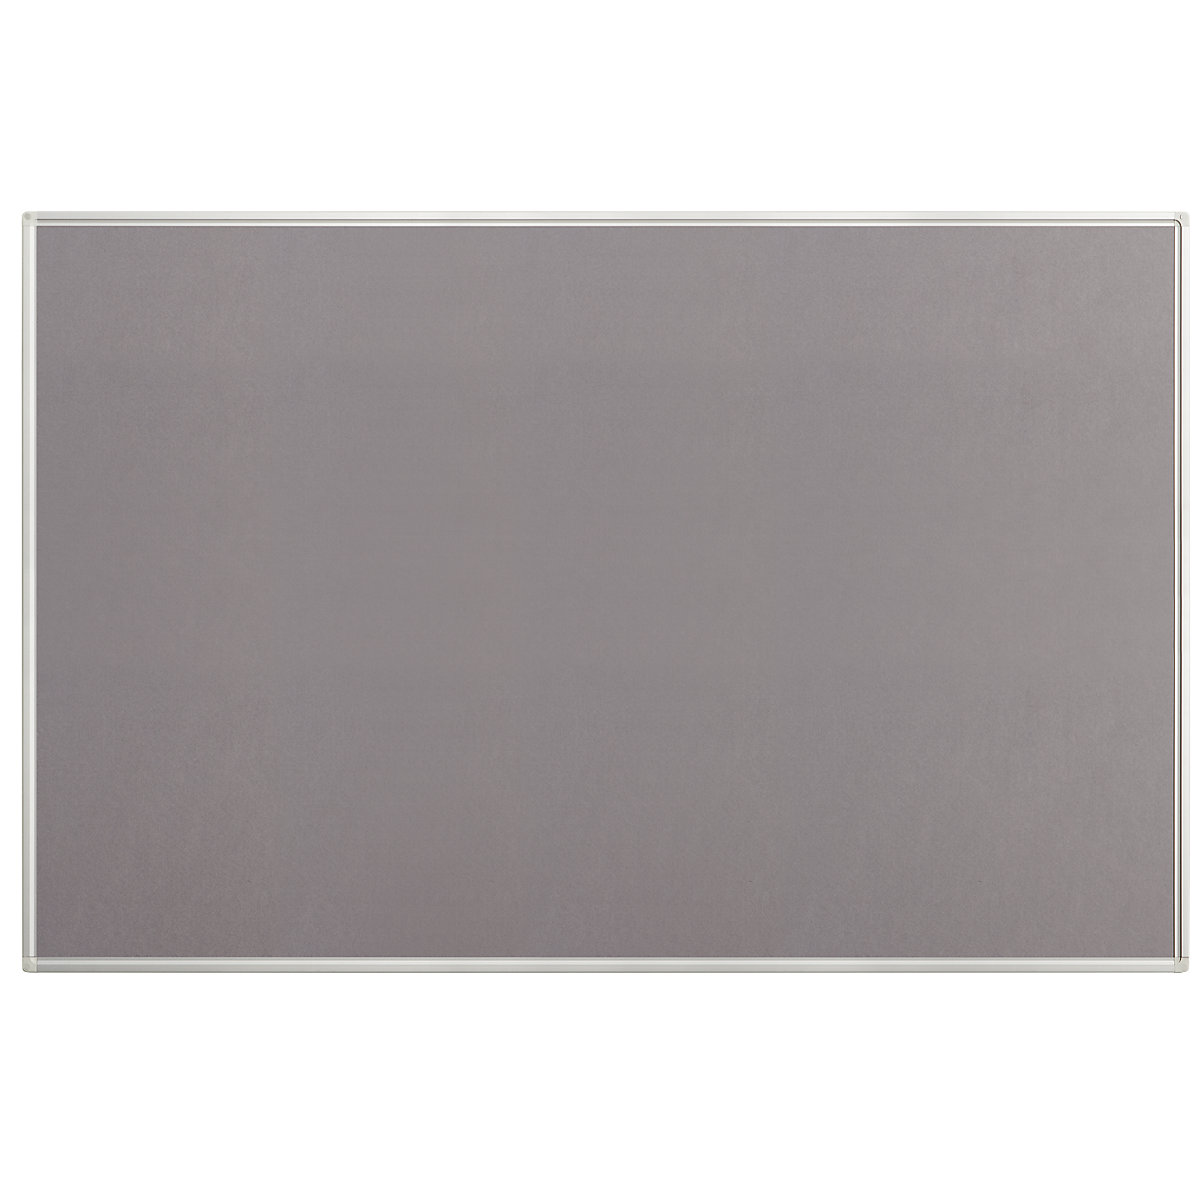 Tableau pour épingles, feutre, gris, l x h 1500 x 1000 mm-4